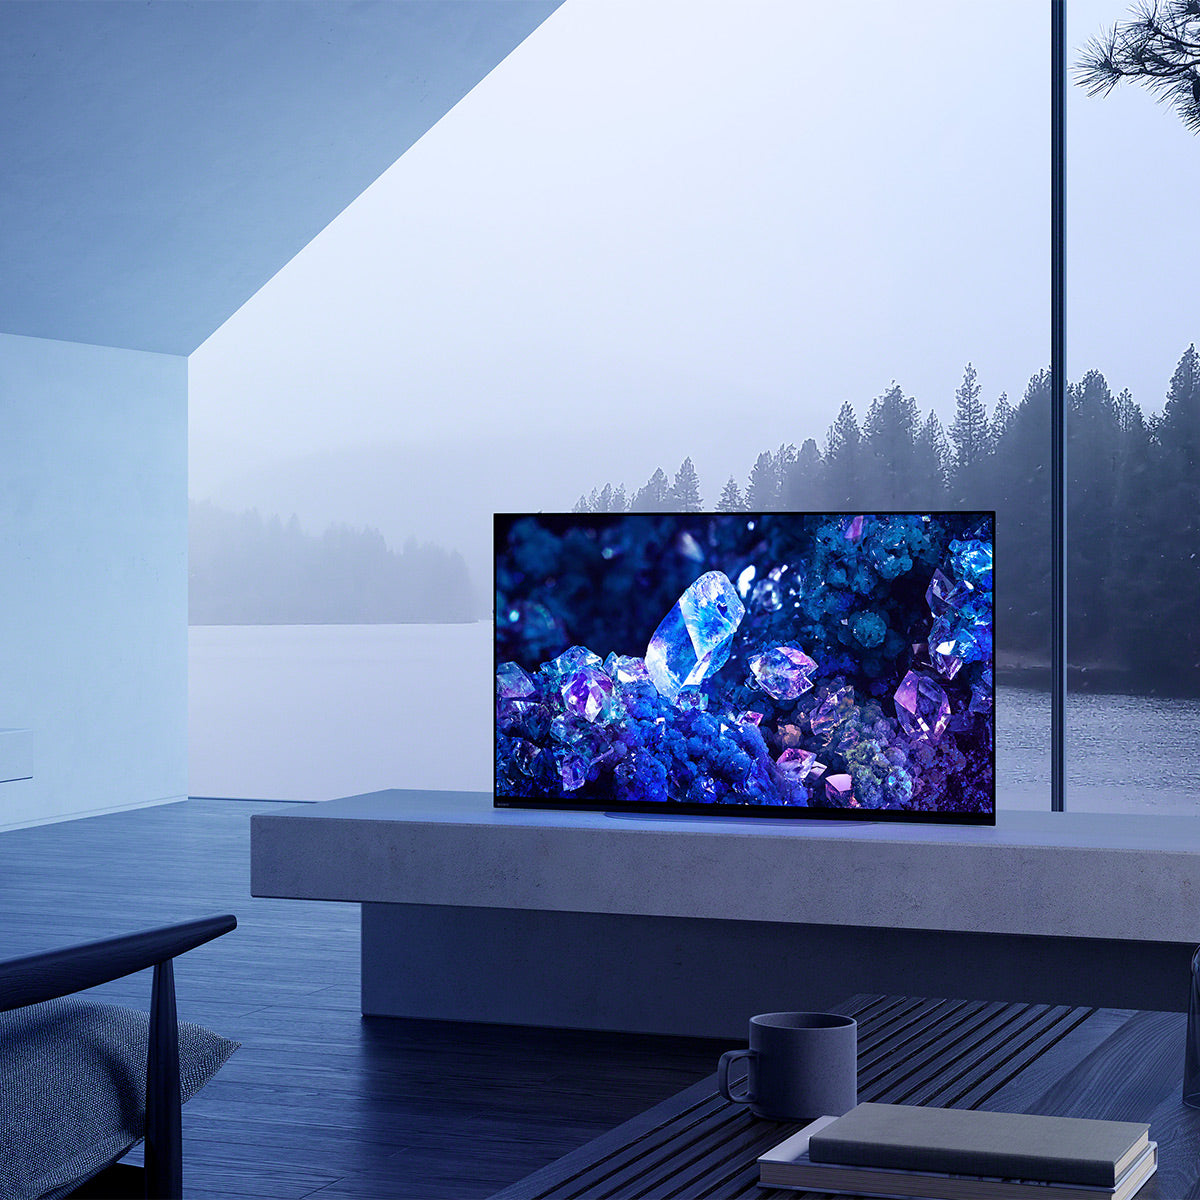 Sony XR42A90K 42 Inch OLED 4K Ultra HD Smart Google TV